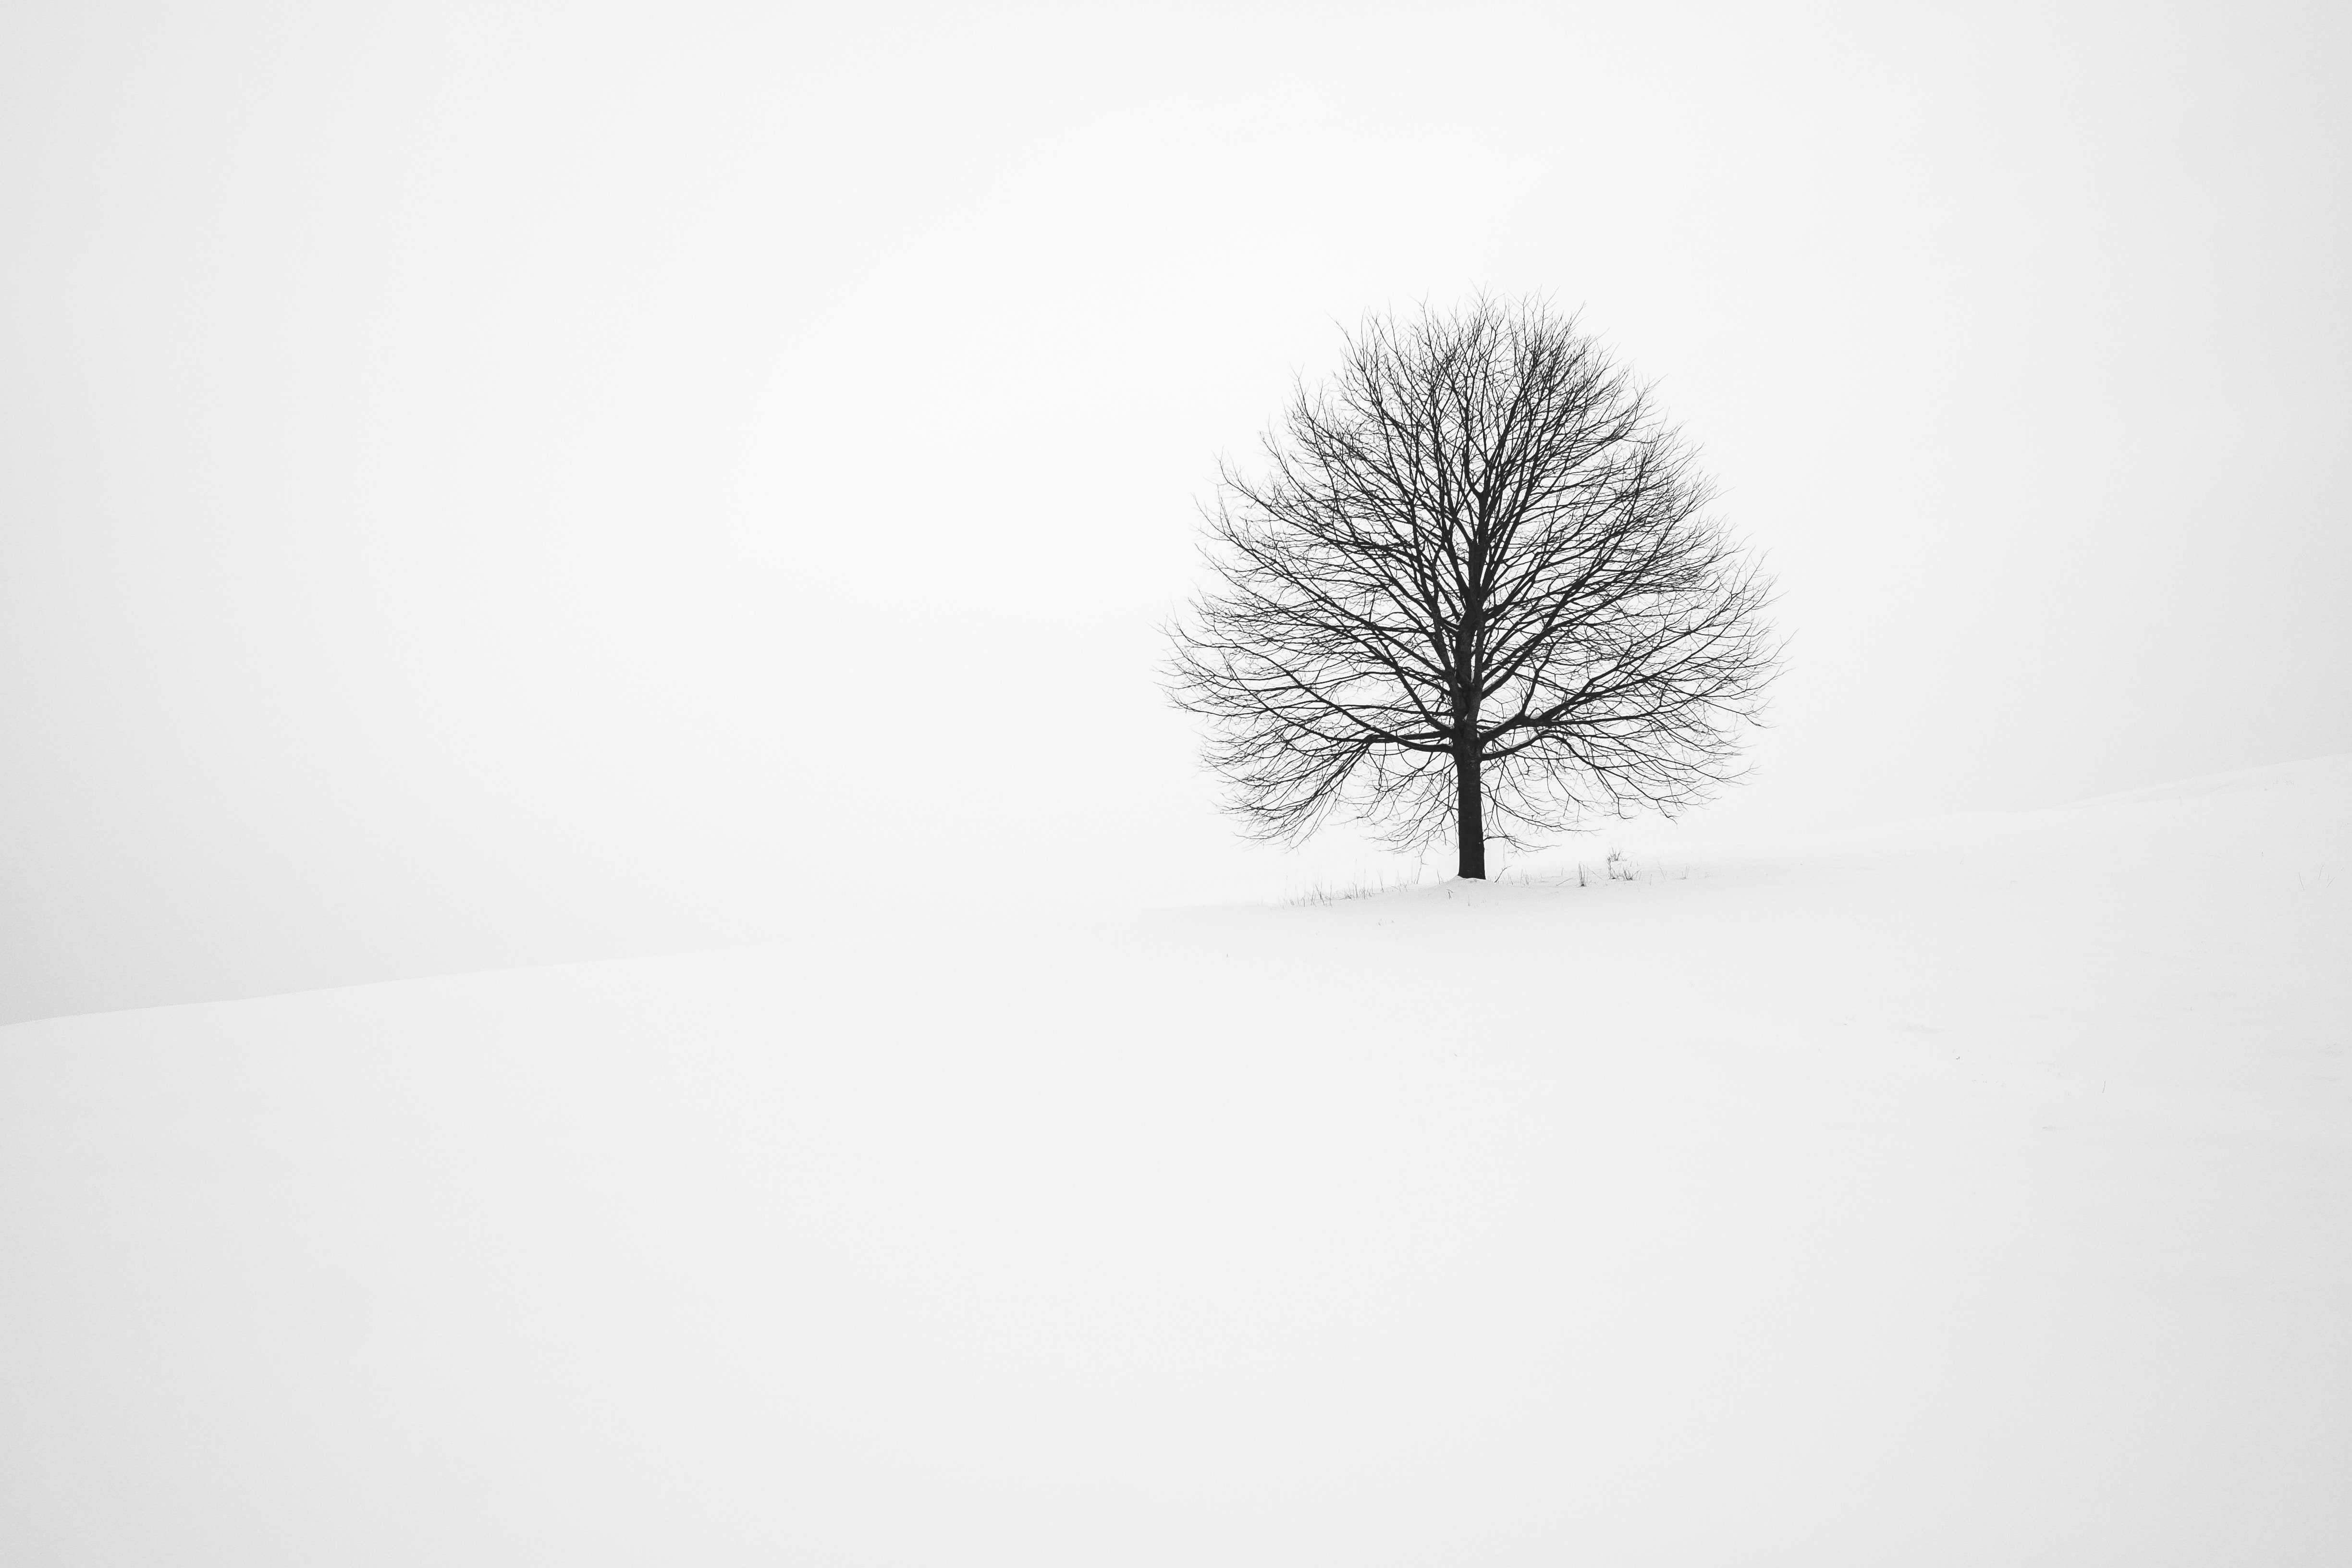 minimalism, winter, snow, wood, tree, bw, chb phone wallpaper